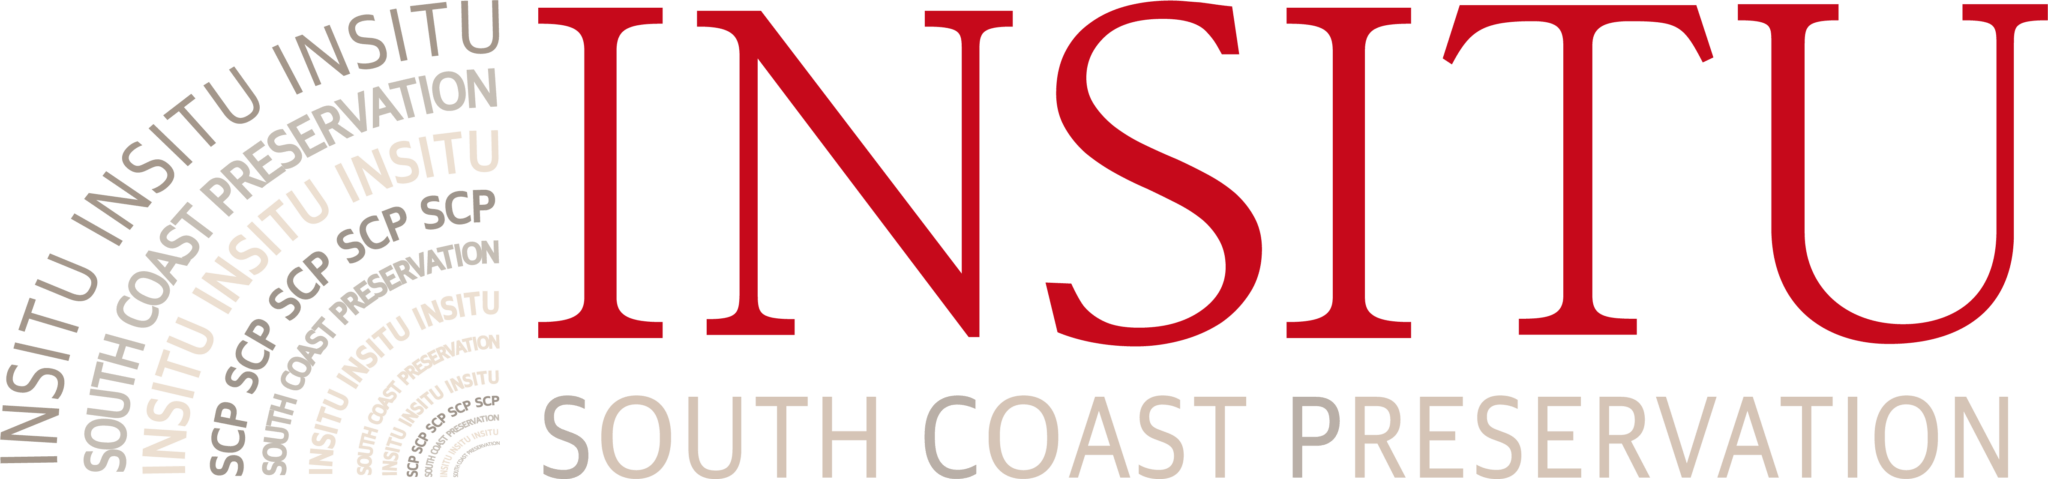 Insitu Logo - Insitu. South Coast Preservation